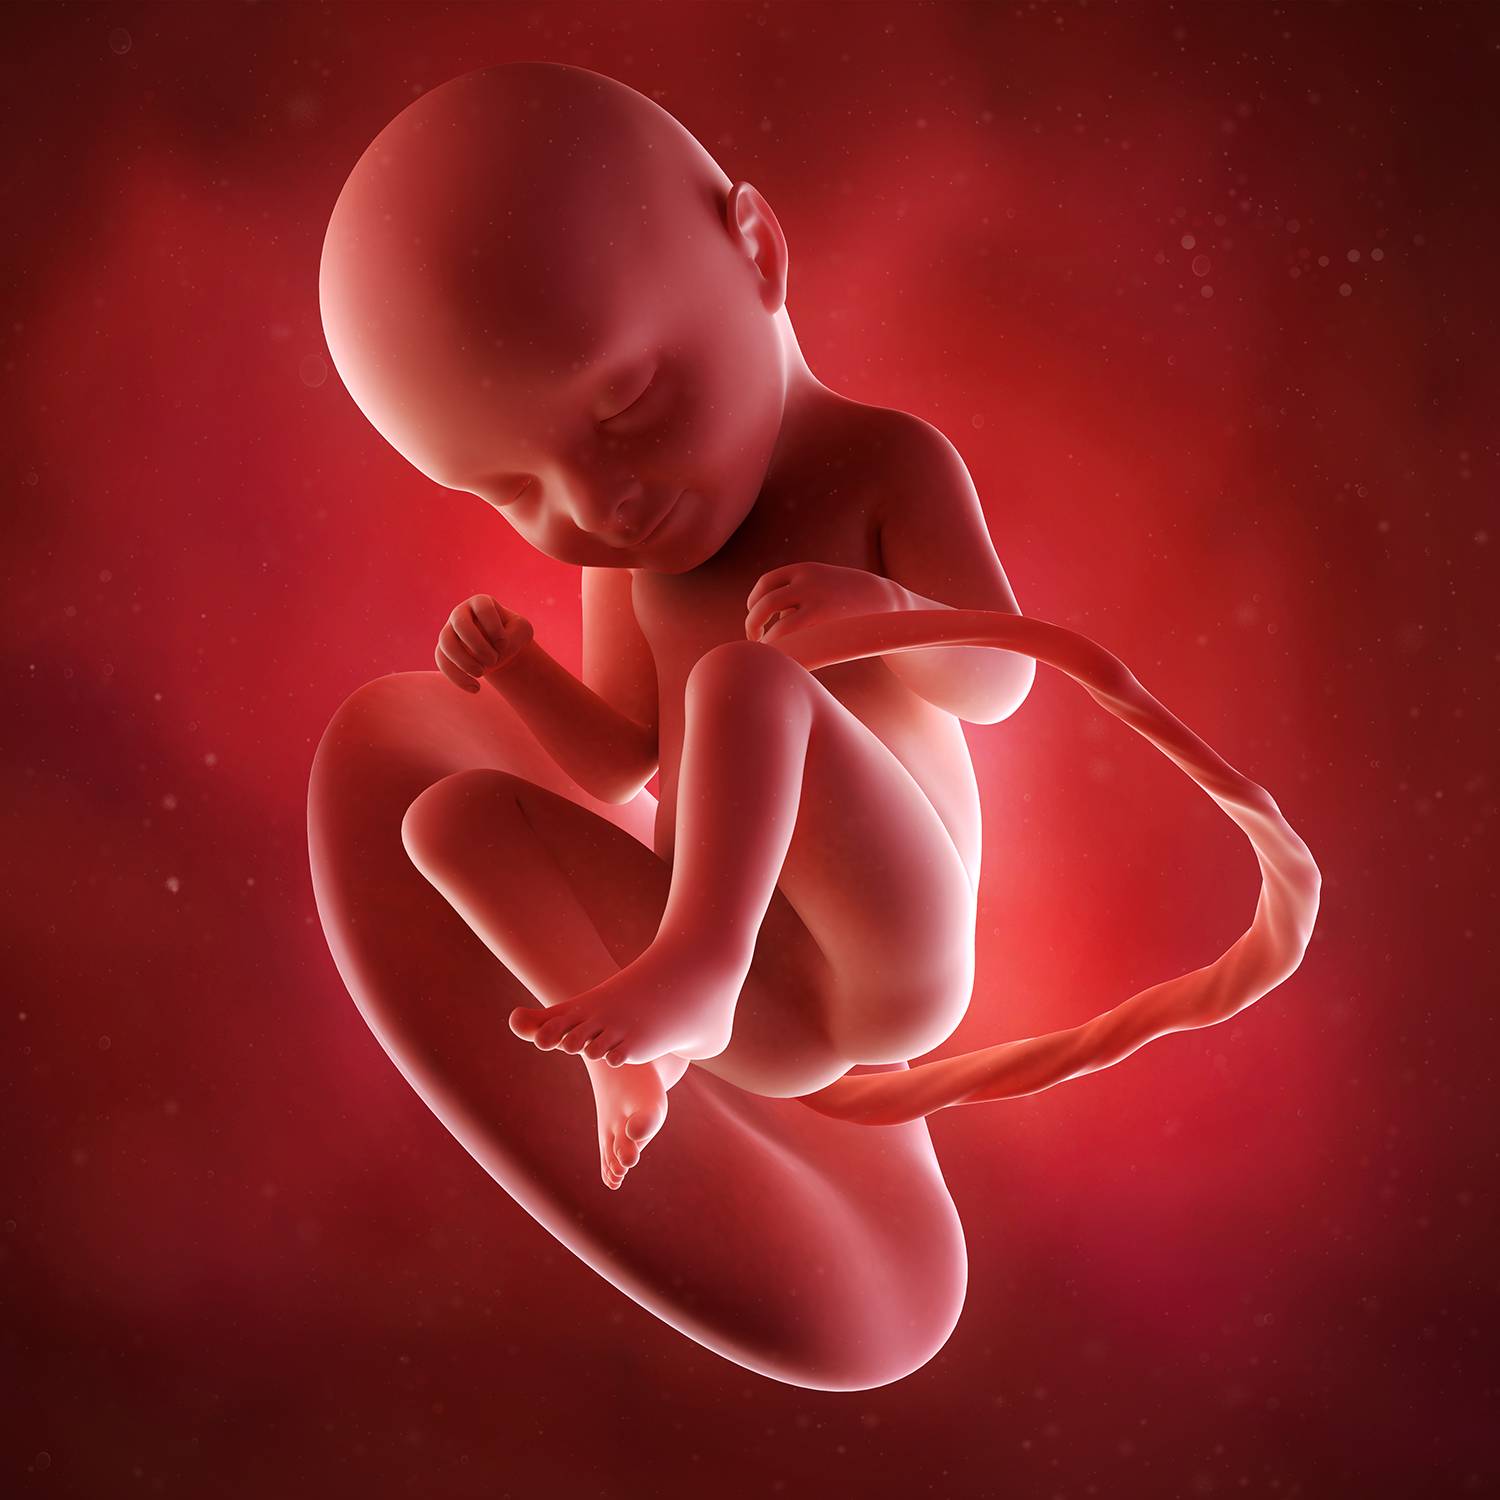 33 недели беременности можно. Внутриутробные снимки детей. Моделирование детей внутриутробно. Фон внутриутробное инфицирование.